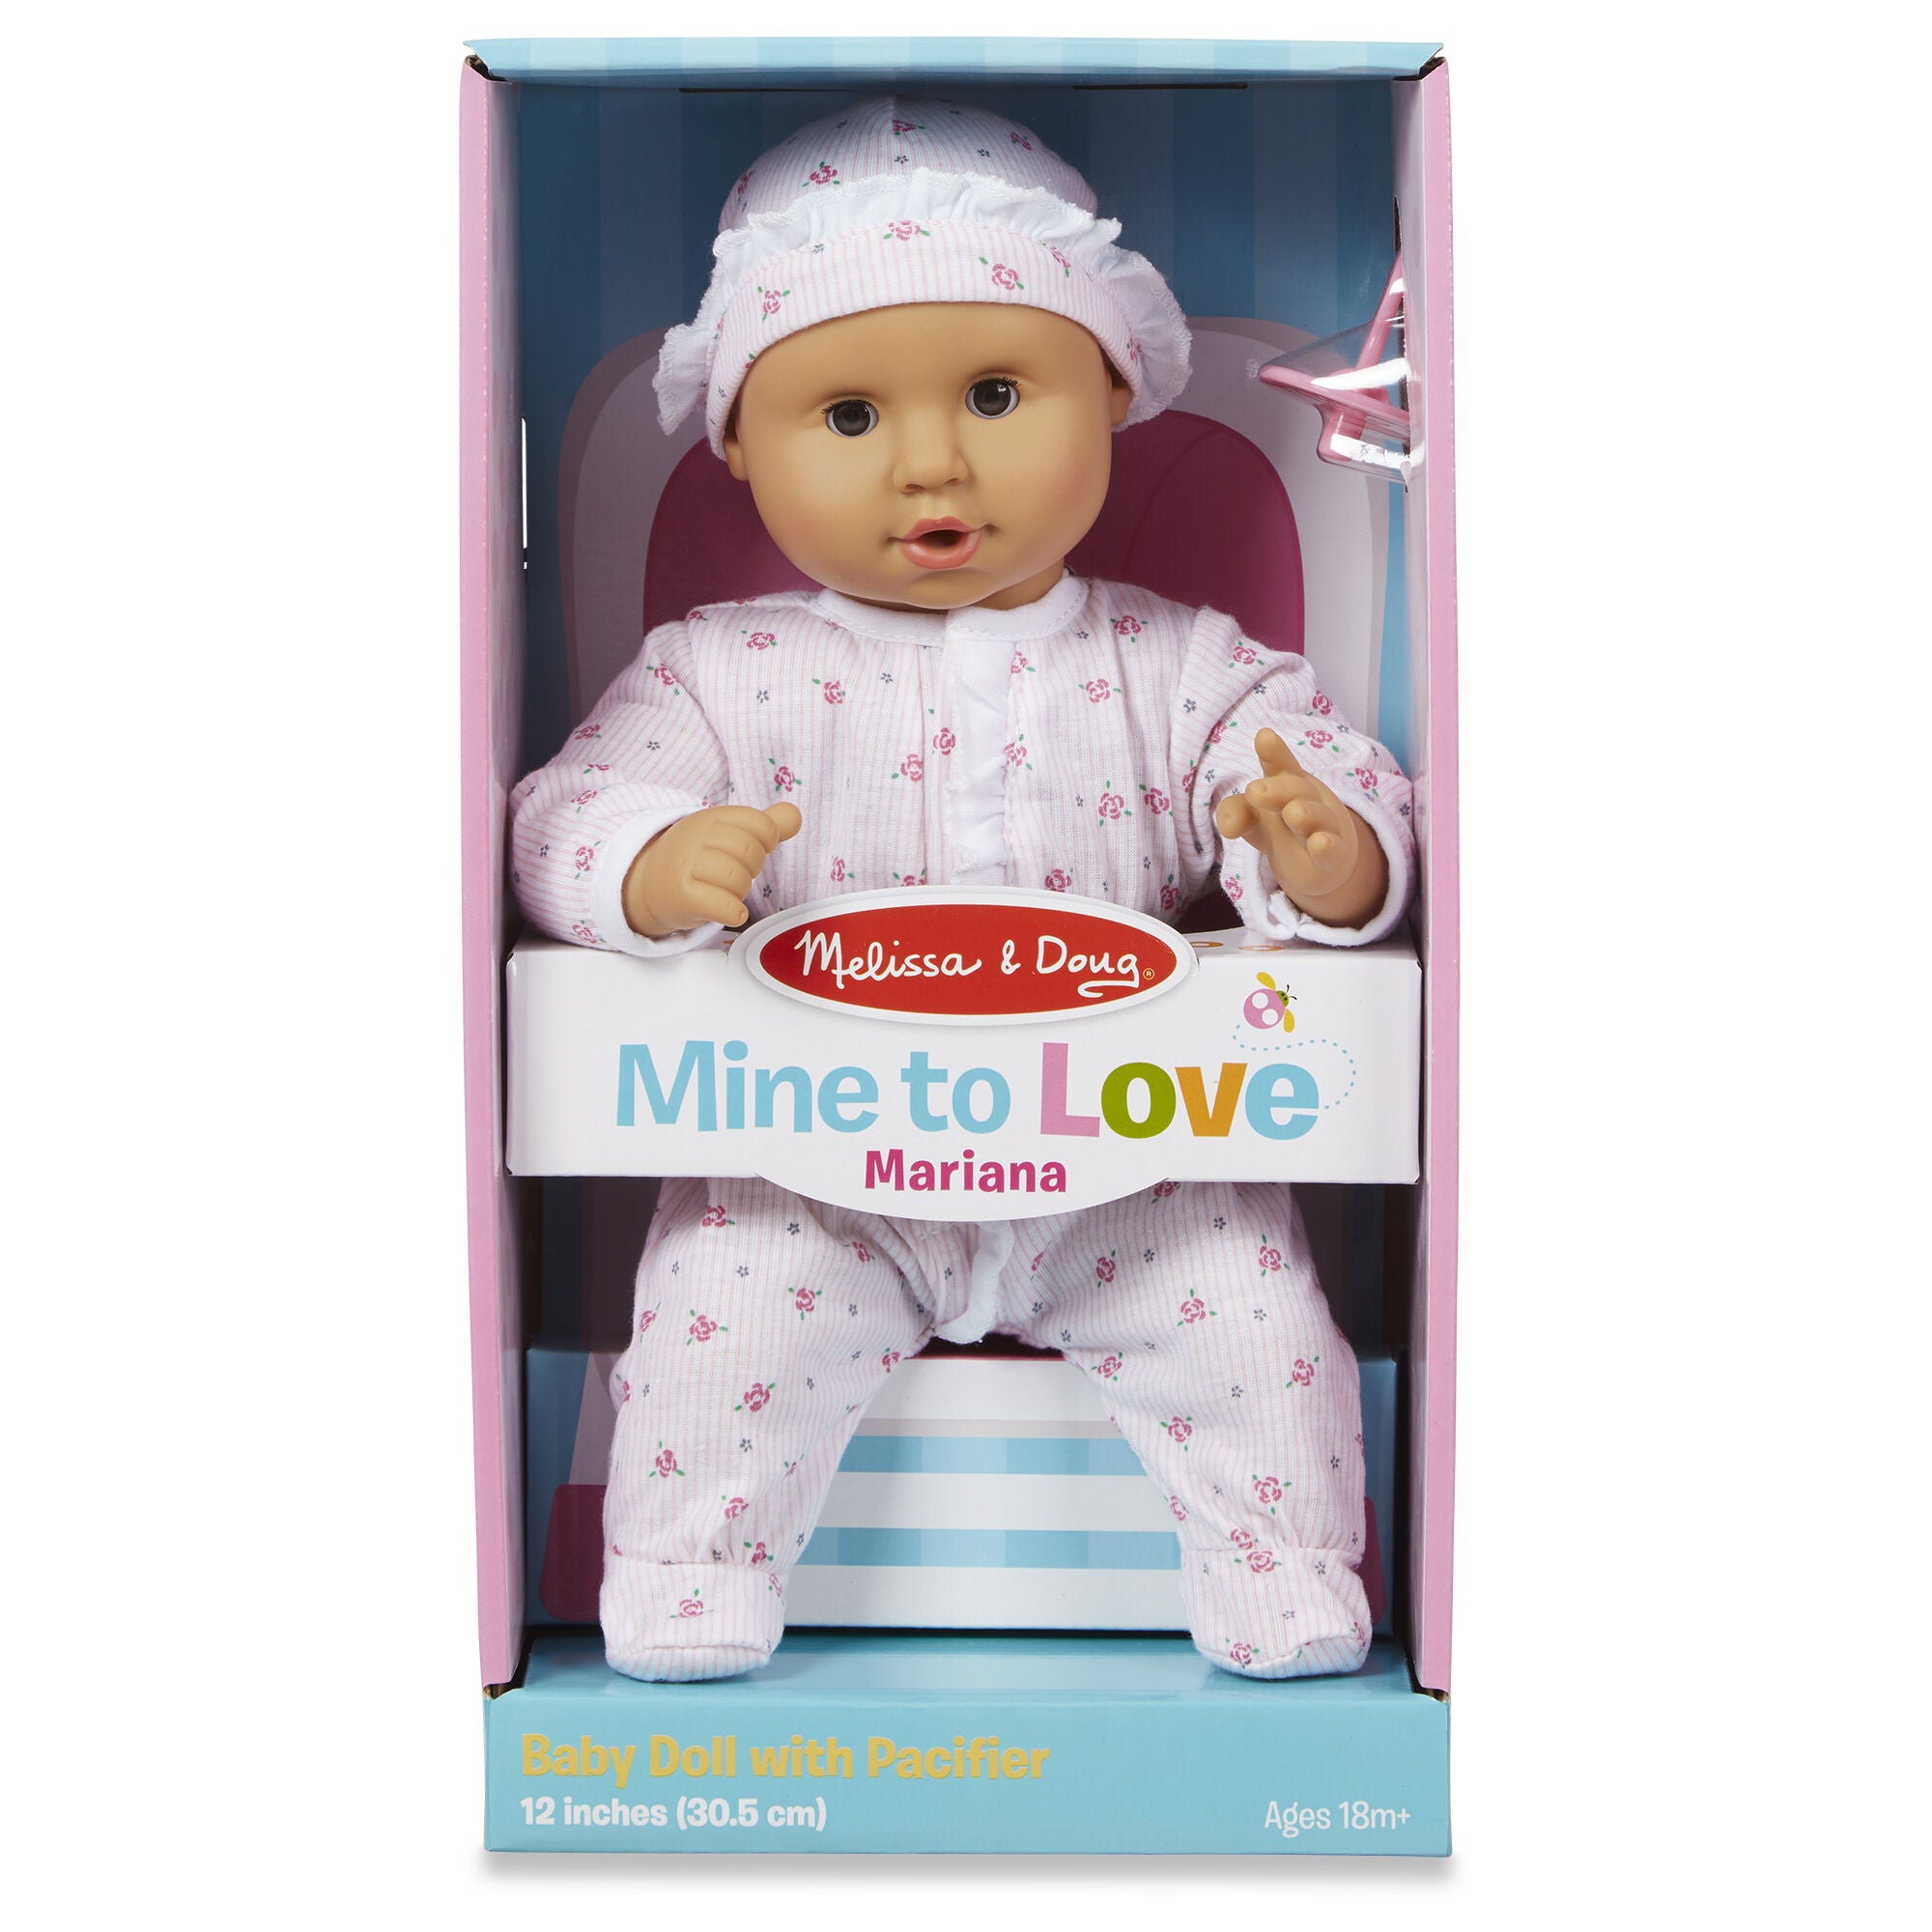 Melissa & Doug Mine to Love - Mariana 12" Baby Doll